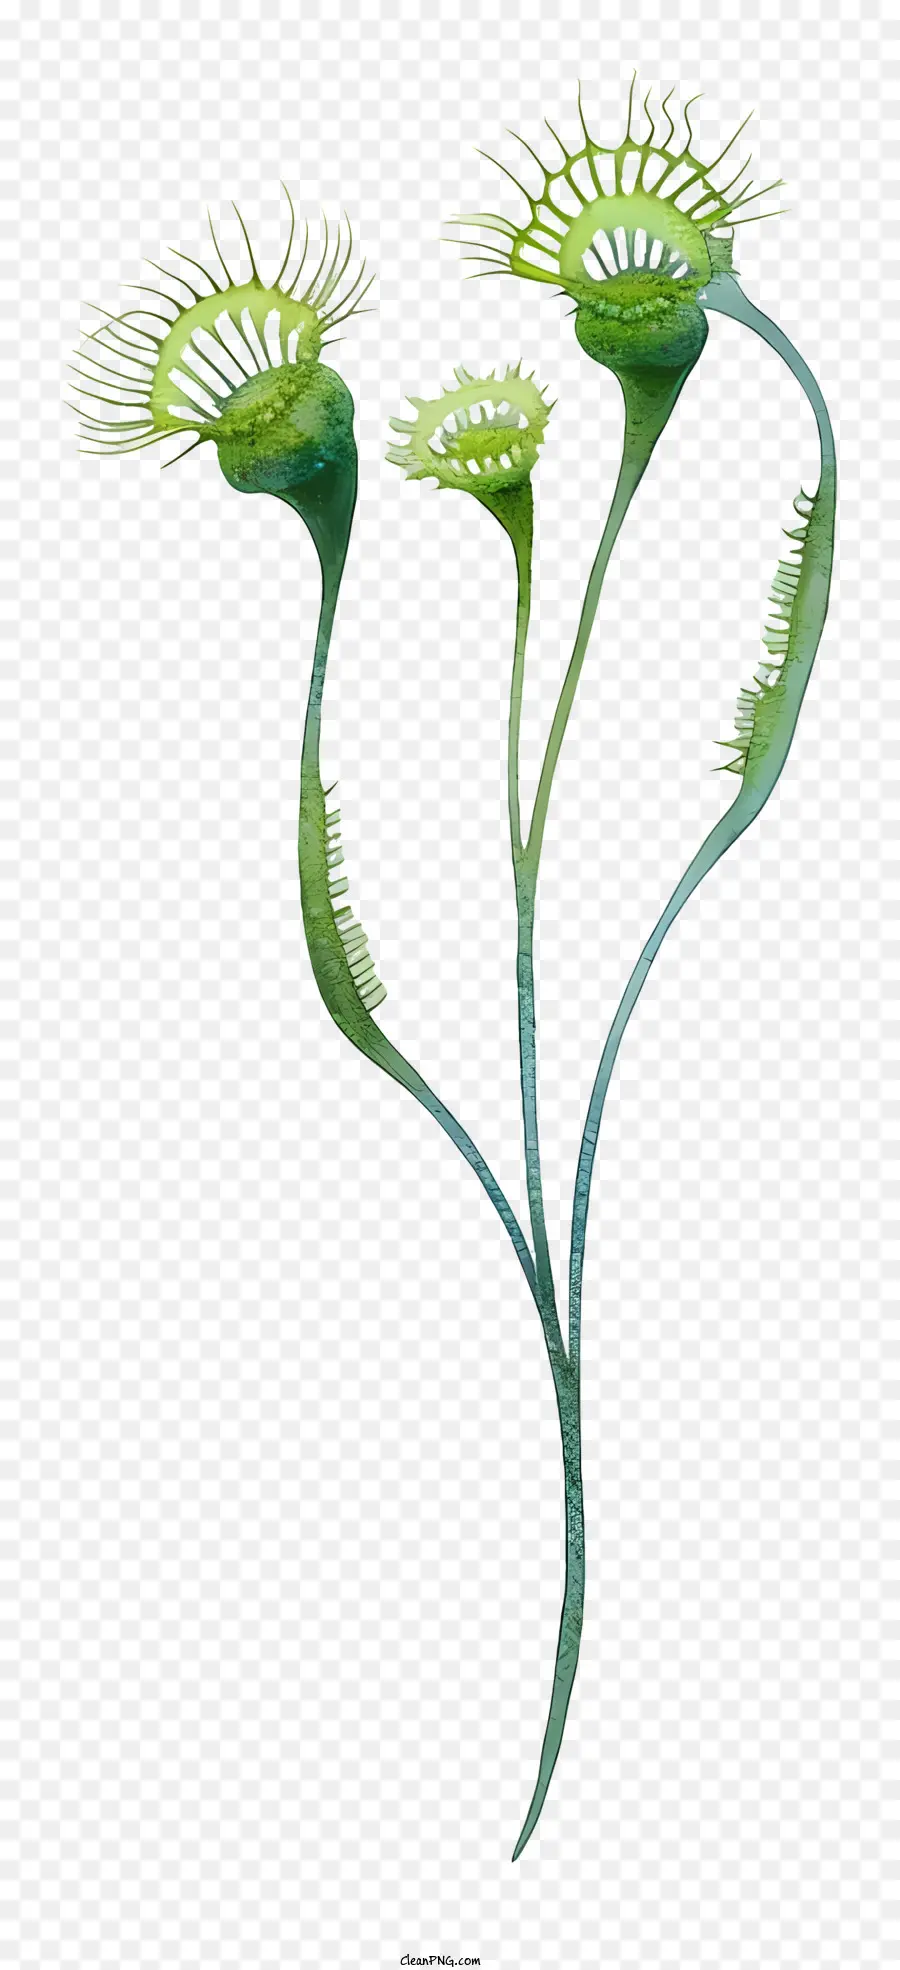 fleischfressende Pflanze fleischfressende Pflanze grüne Blätter rote Spikes lange weiße Zungen - Fleischfressende Pflanze mit roten Spikes, weiße Zungen